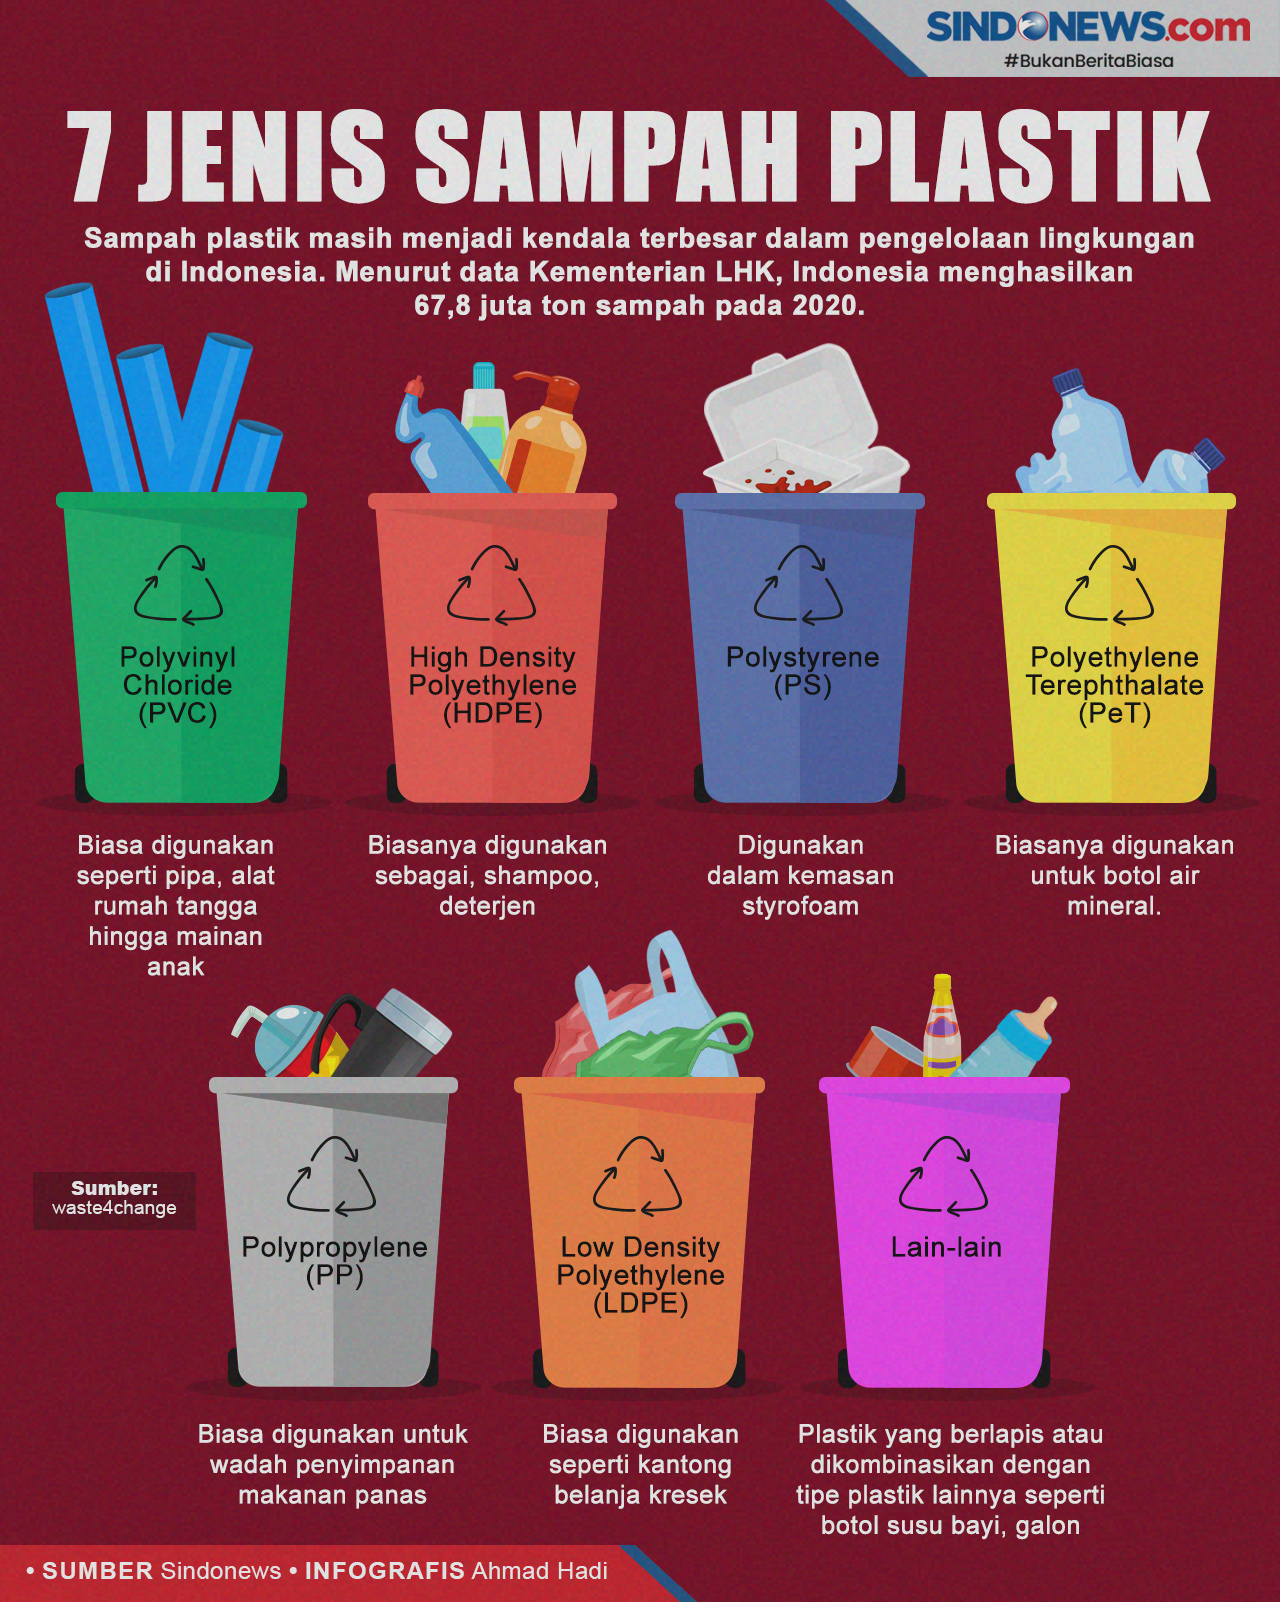 Mengenal 7 Jenis Sampah Plastik yang Bisa Didaur Ulang News+ on RCTI+